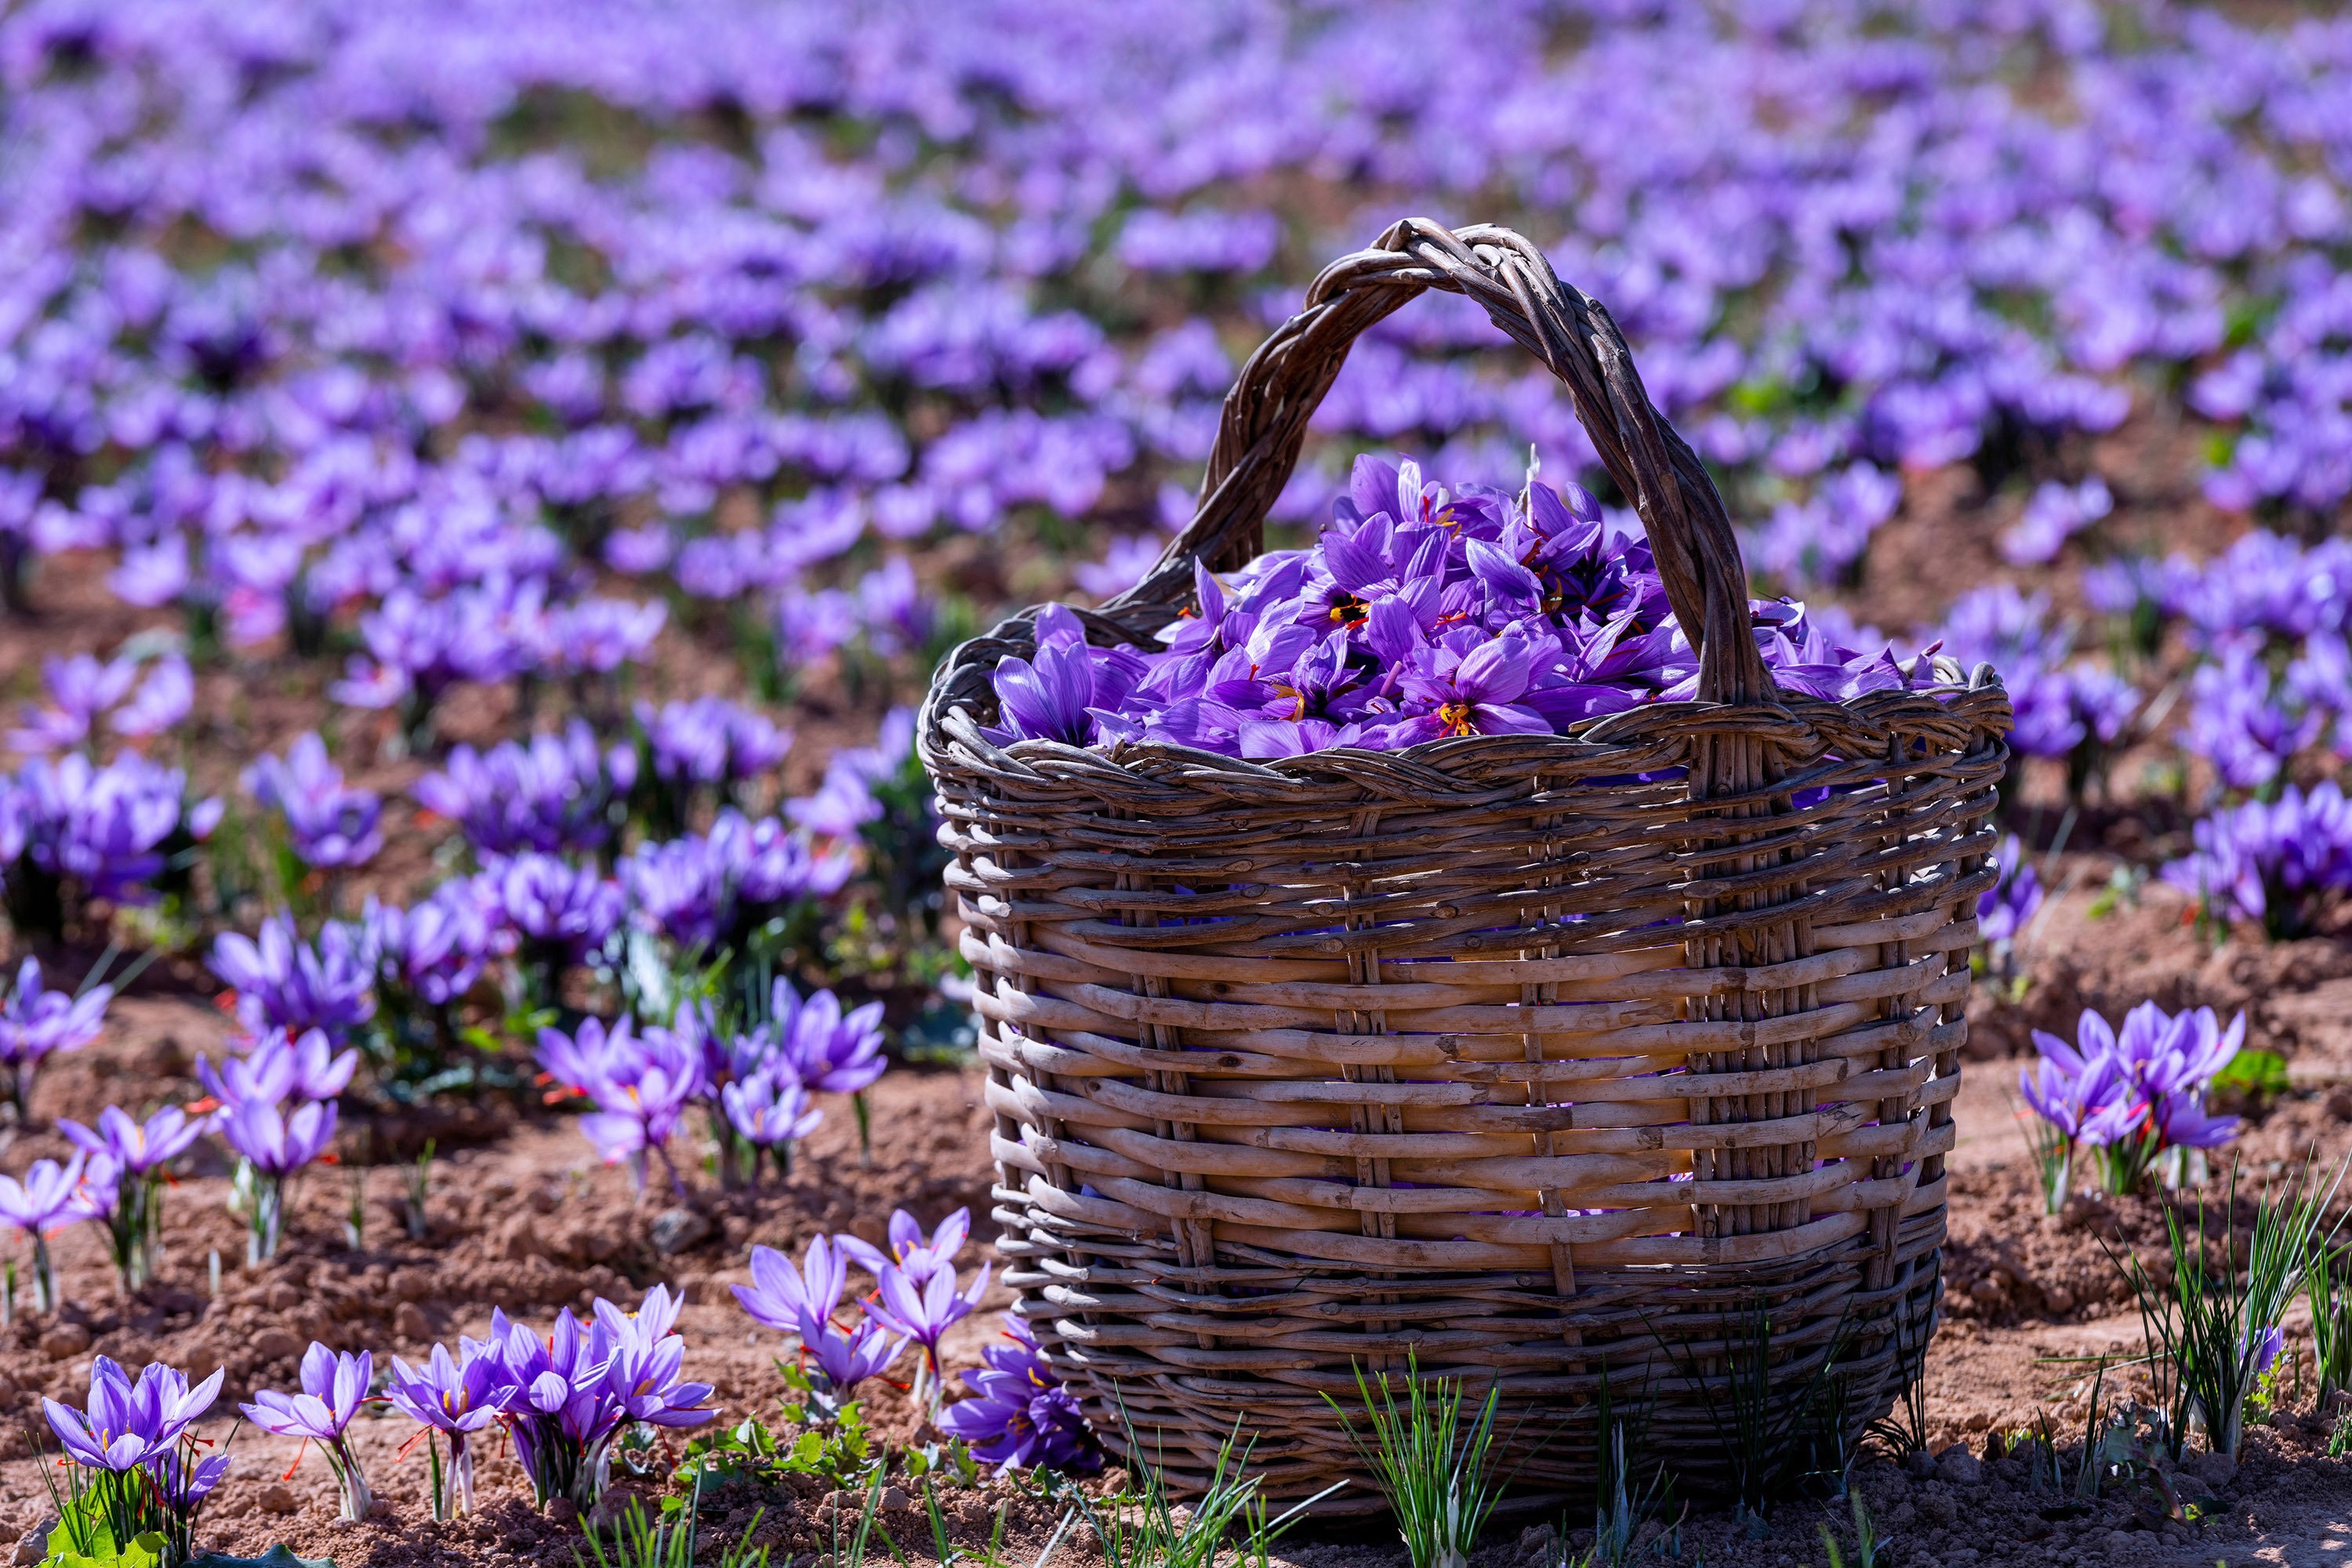 Une promenade au milieu de ces fleurs violettes est certainement une belle expérience.  (Photo Shutterstock)